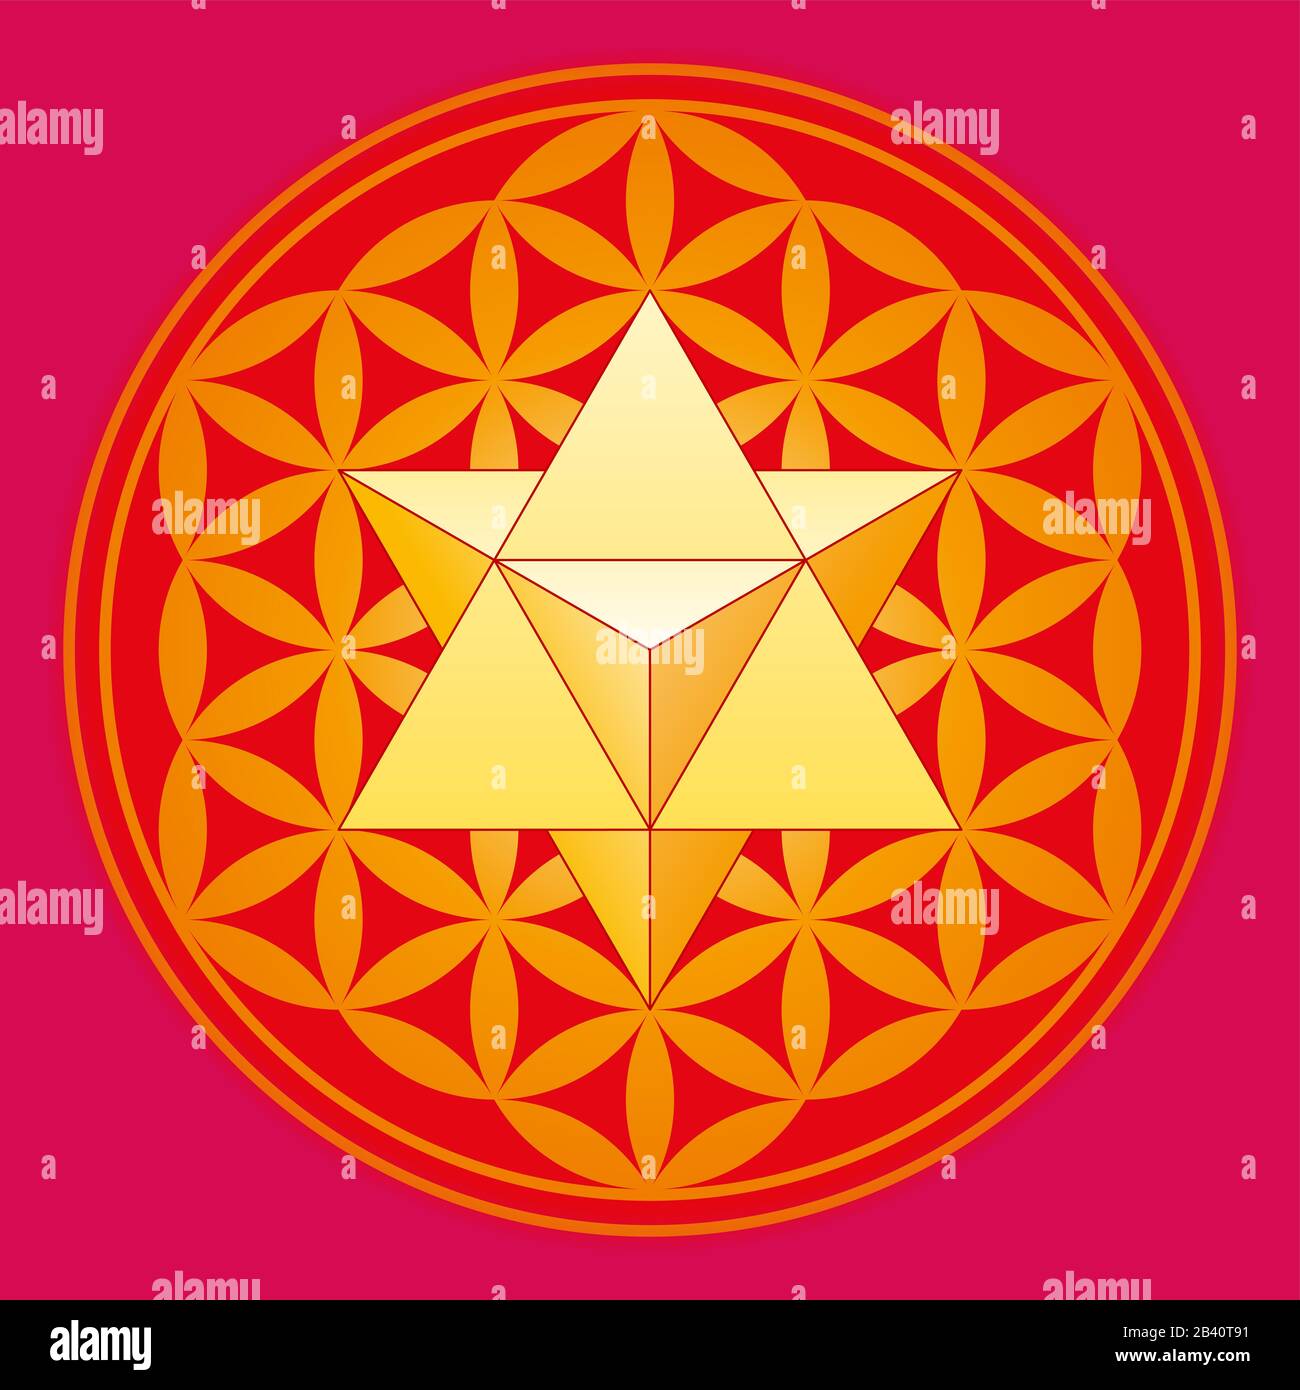 Una stella tetraedro chiamato anche Merkaba, nel fiore della vita. Un tetraedro doppio in una figura geometrica, composto da cerchi sovrapposti. Foto Stock